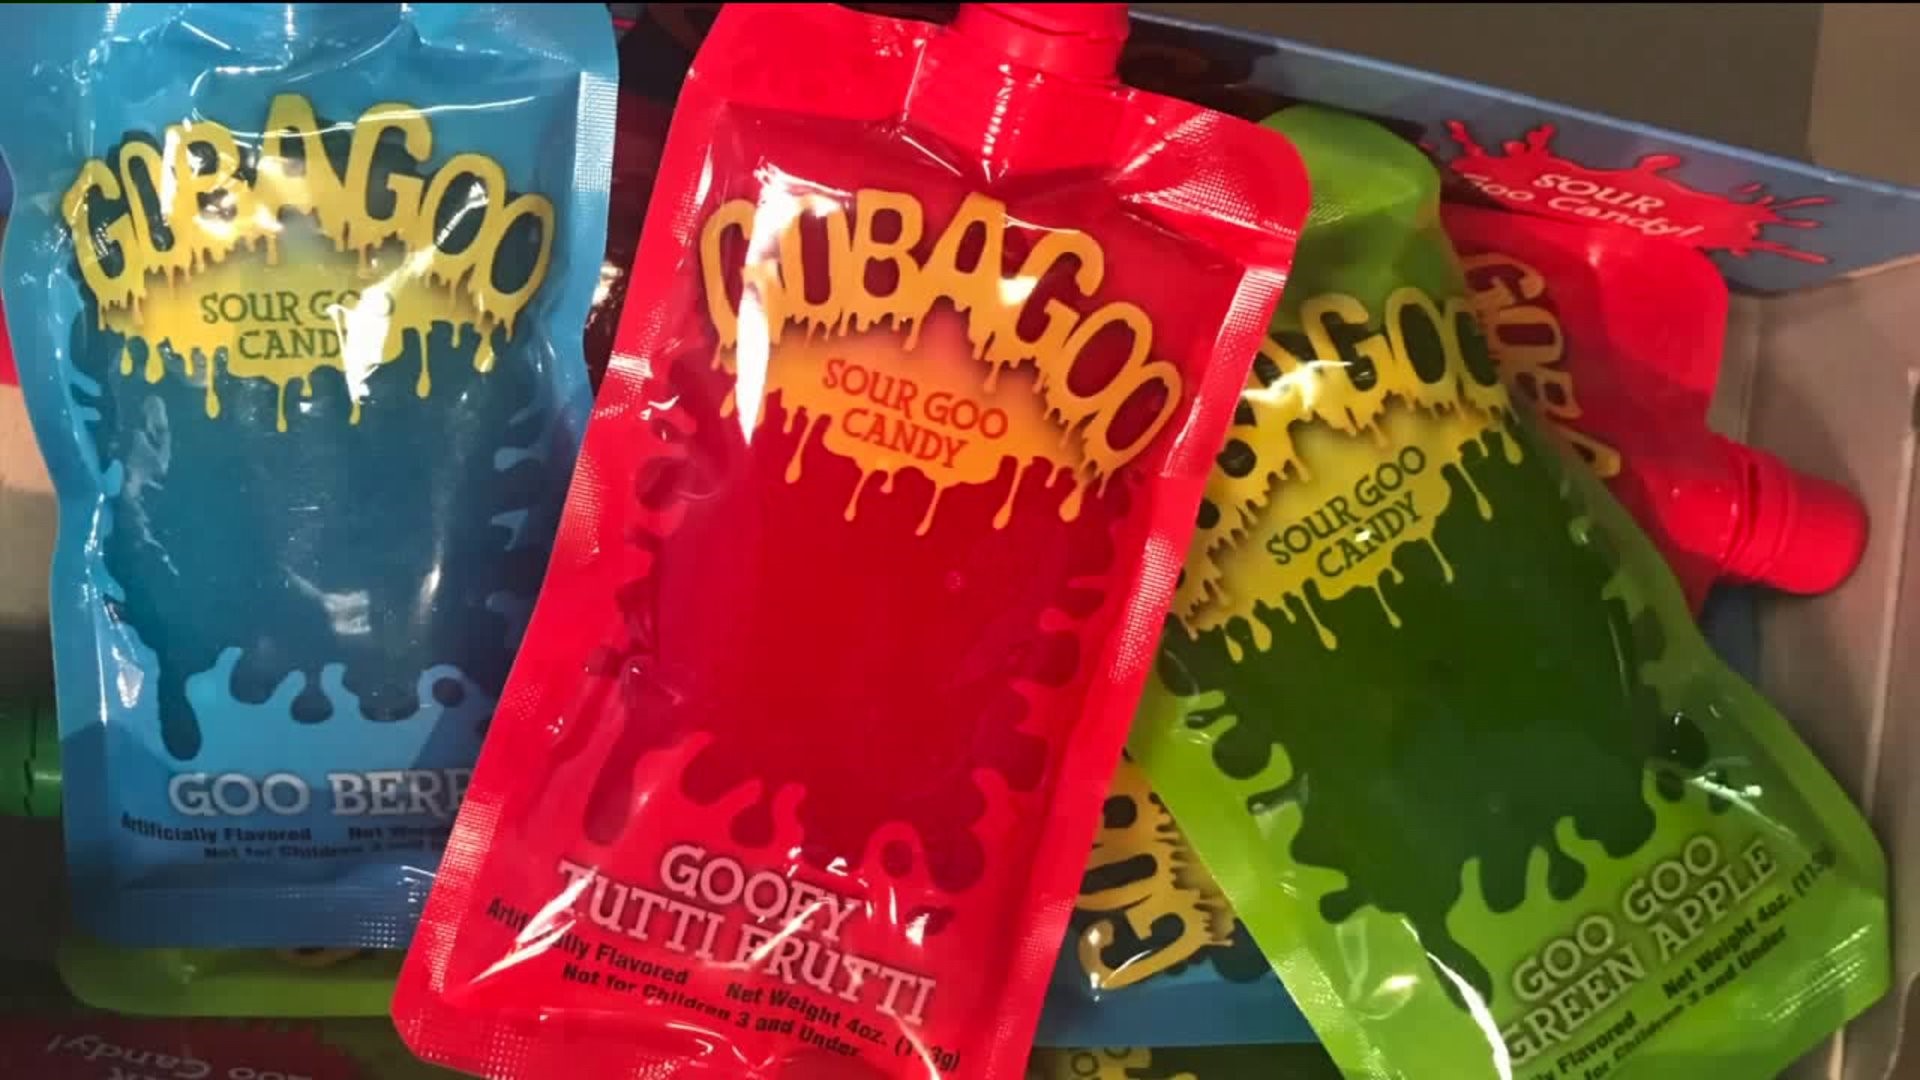 Taste Test: Gobagoo Sour Goo Candy